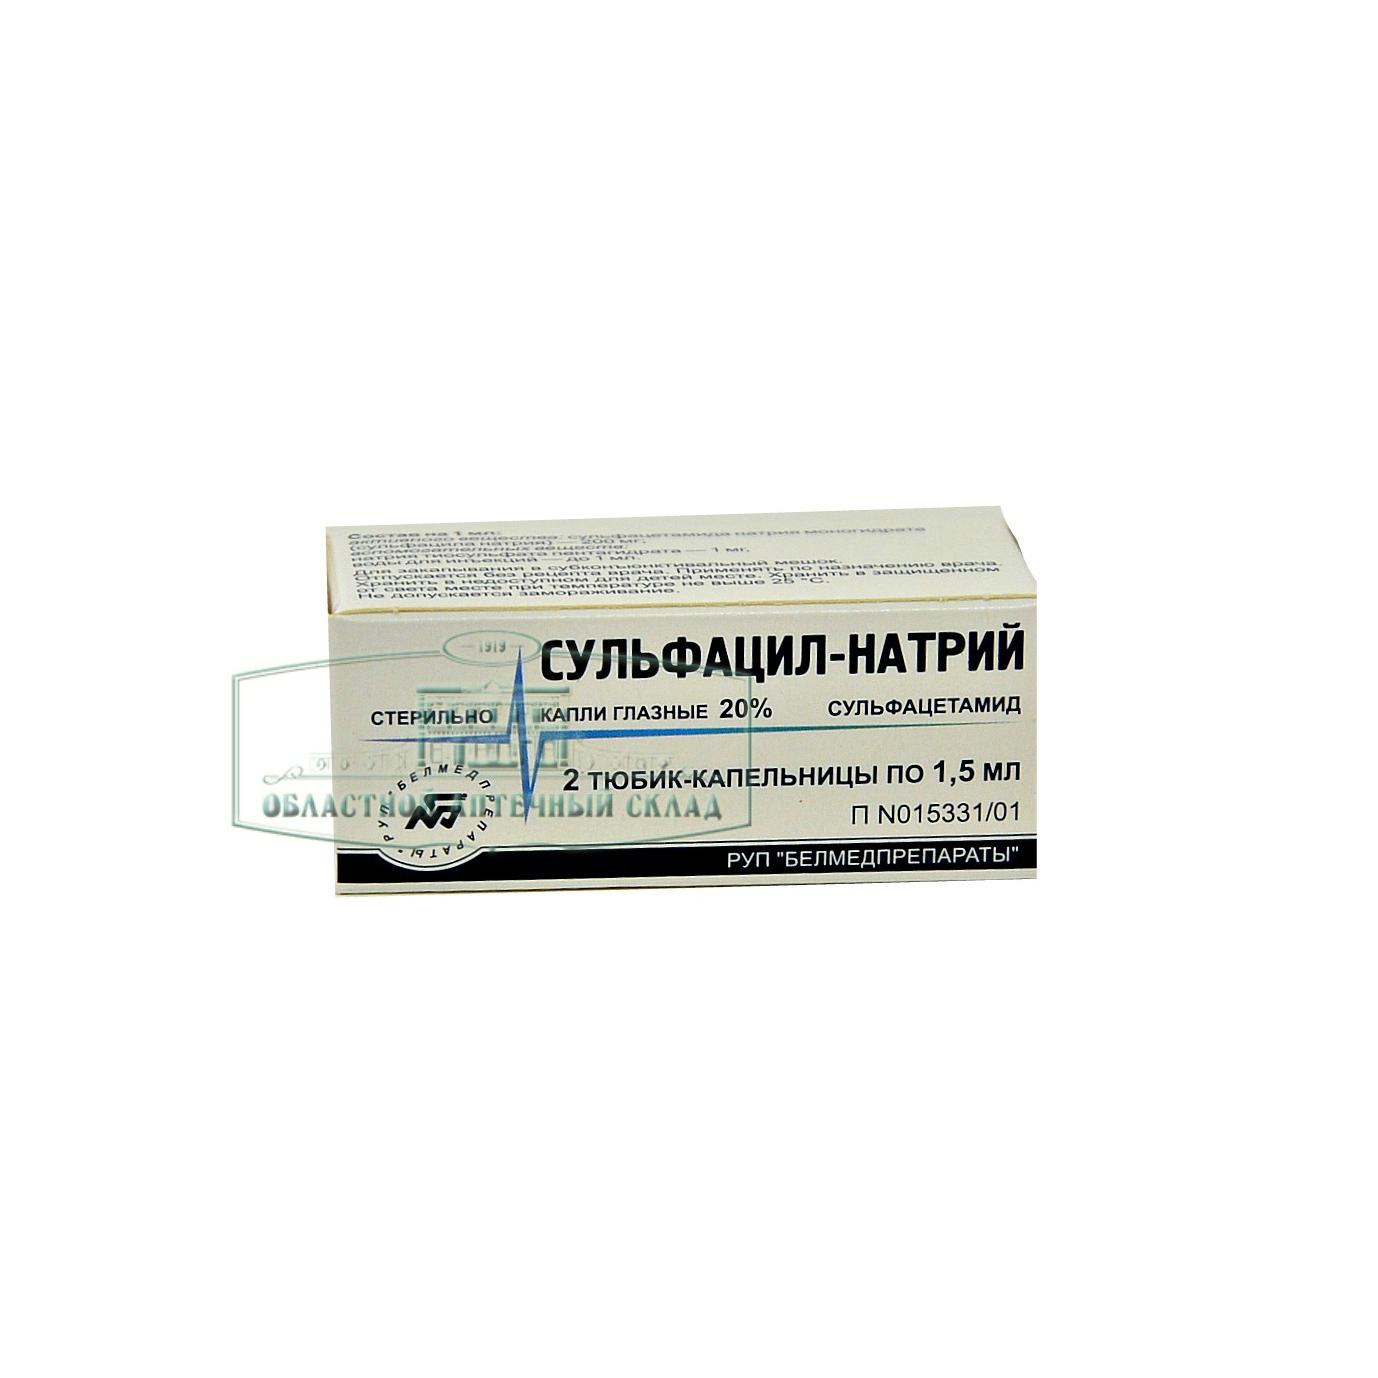 Сульфацил-натрий капли 20% 1.5мл N2  в Челябинске по доступным ценам